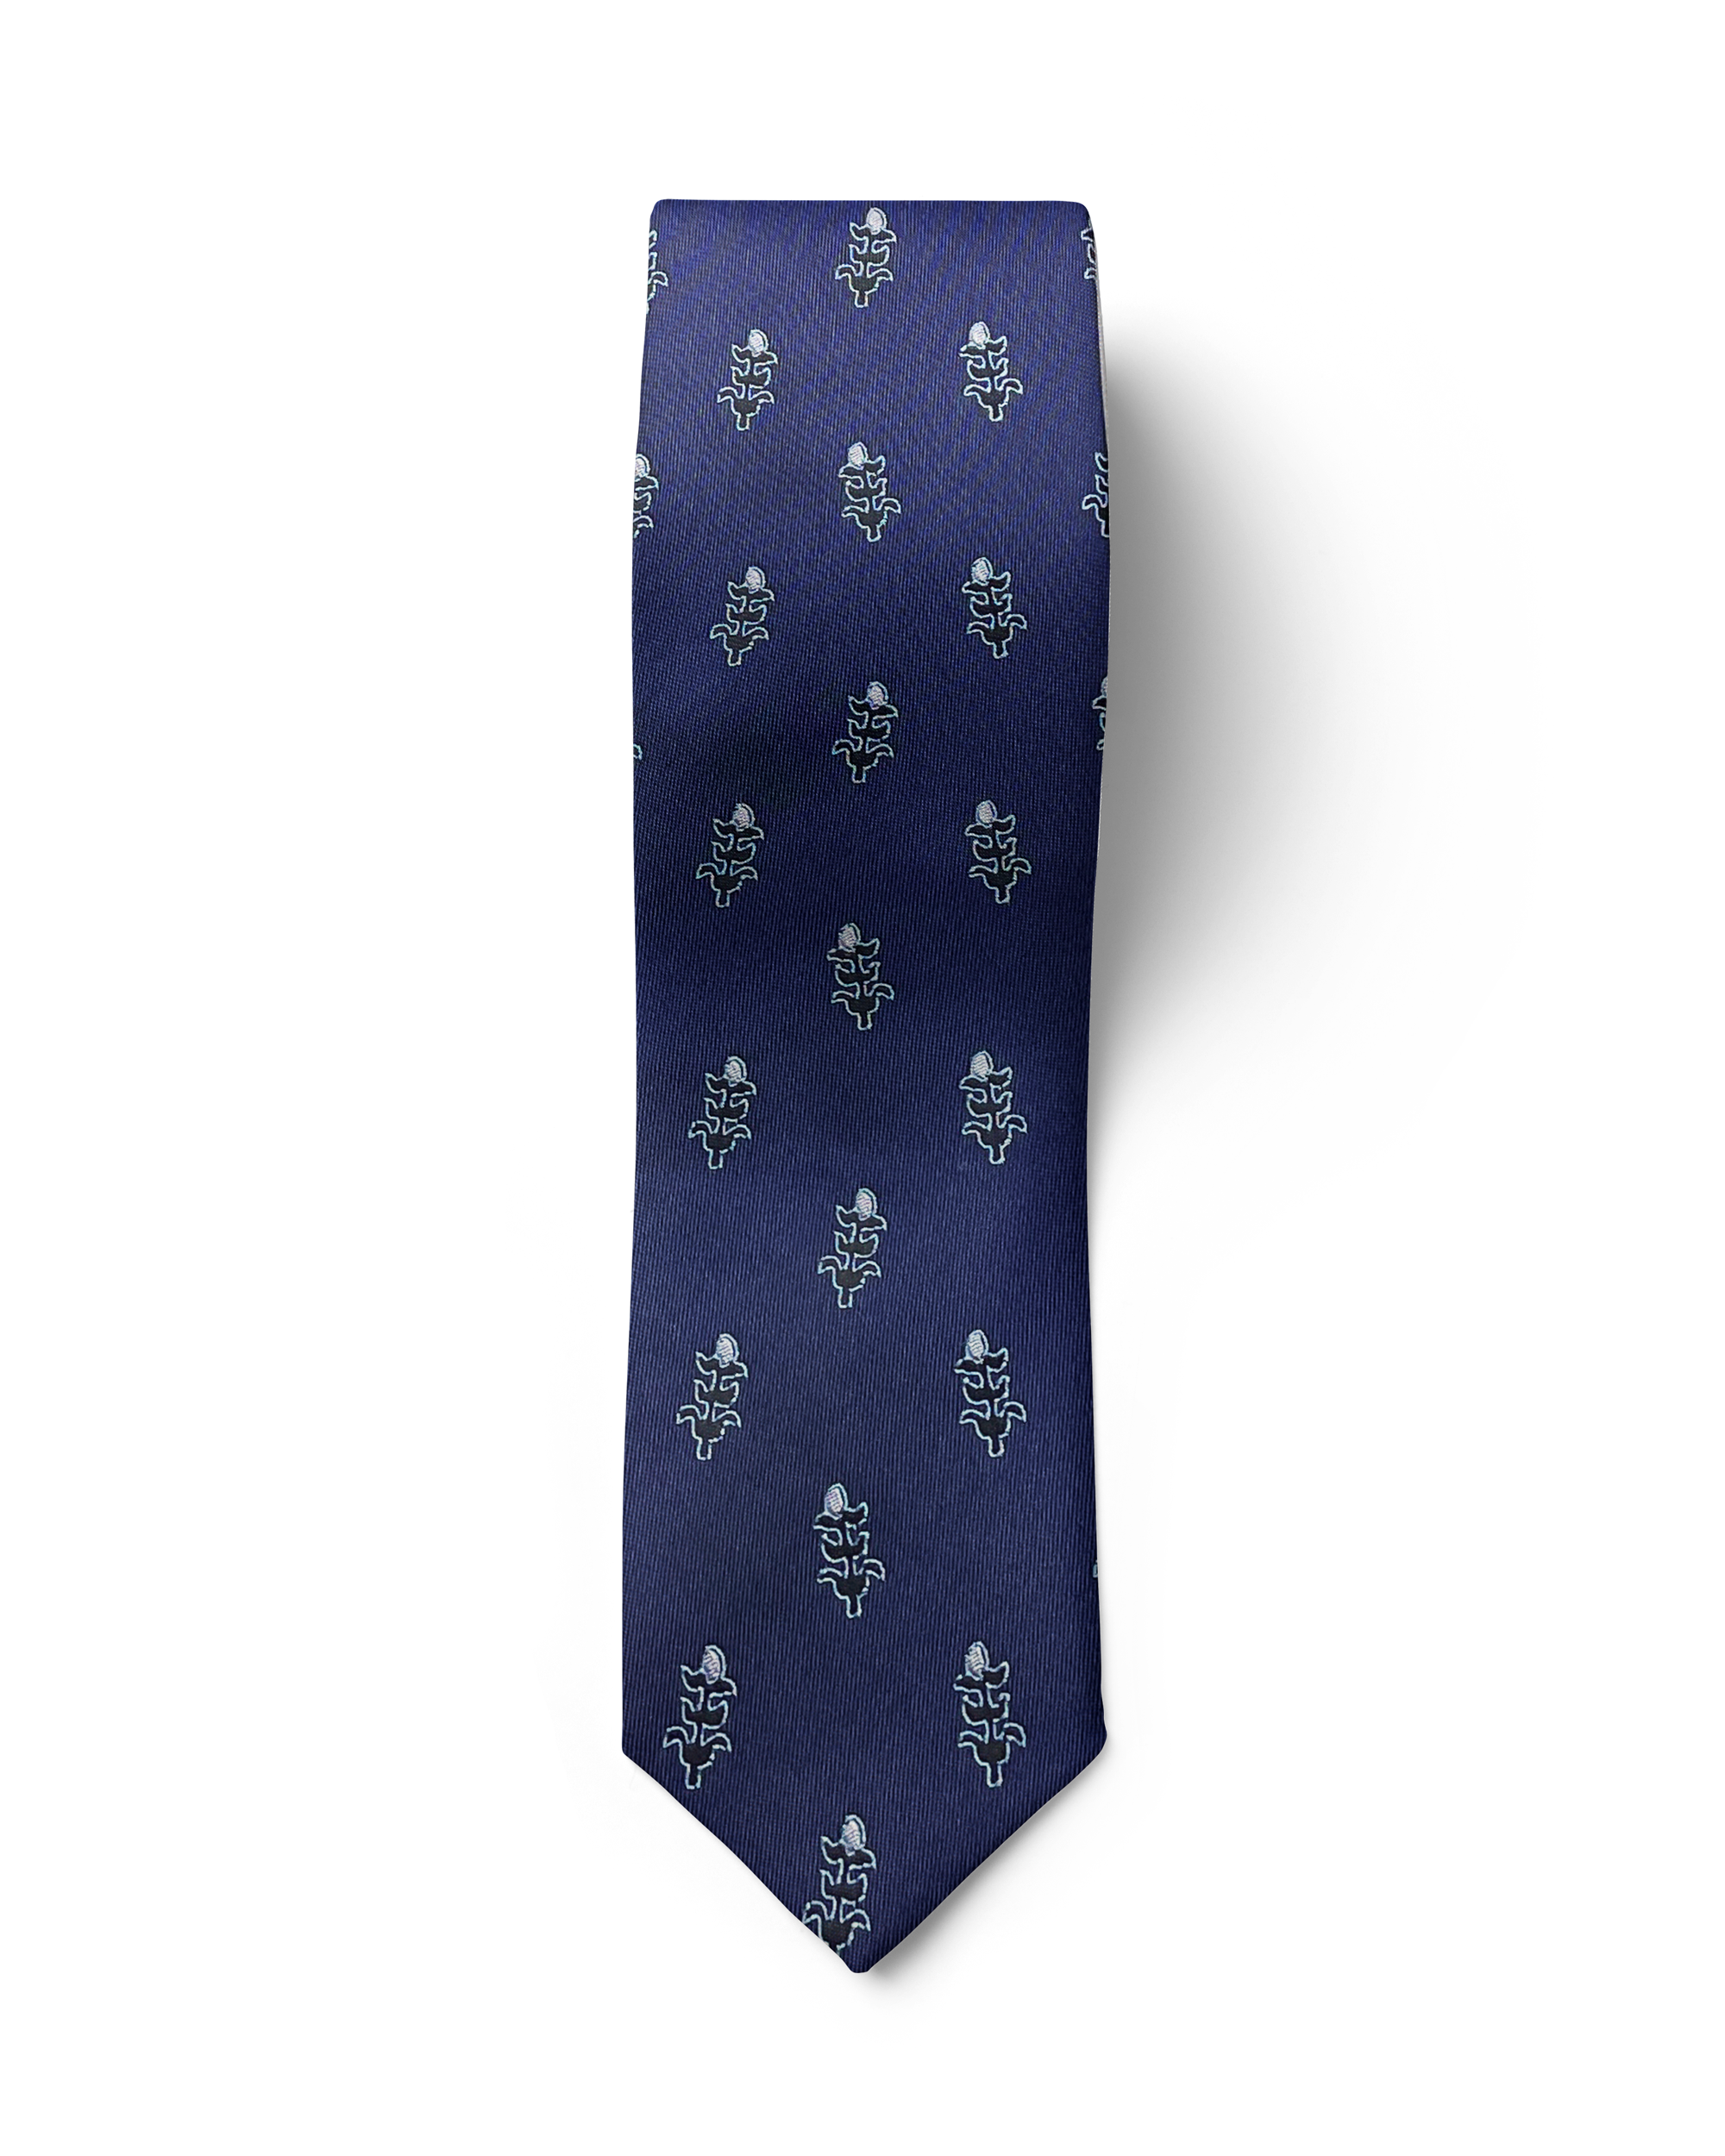 ჟაკარდის აბრეშუმის ჰალსტუხის და საგულის სეტი „თოლიგე“ (ლურჯი)